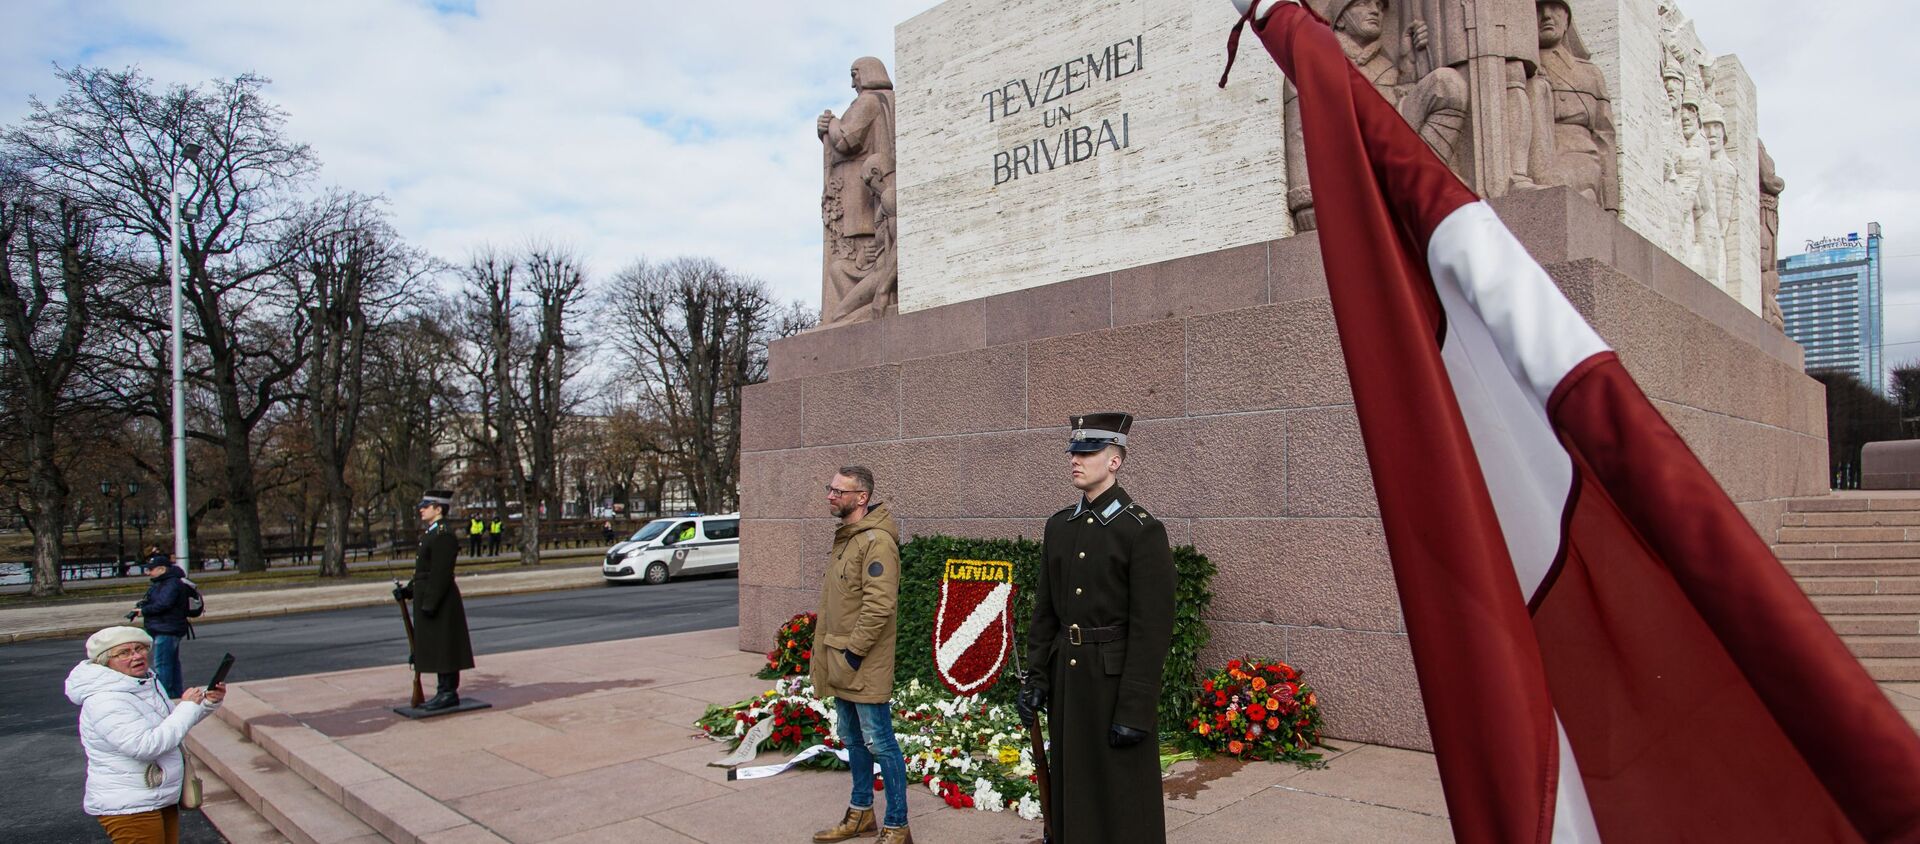 Сторонники латышского легиона Waffen-SS возлагают цветы к памятнику Свободы в Риге - Sputnik Молдова, 1920, 18.03.2021